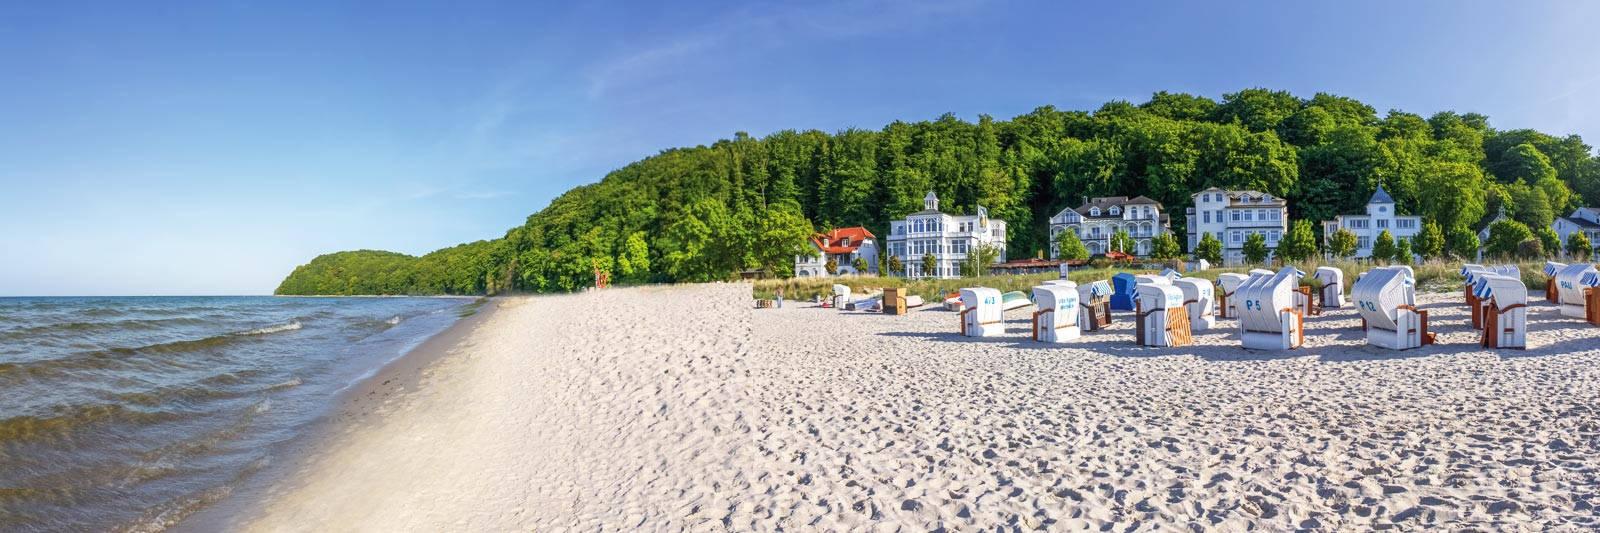 35 Ferienwohnungen und Ferienhäuser in Kummerow - tourist-online.de